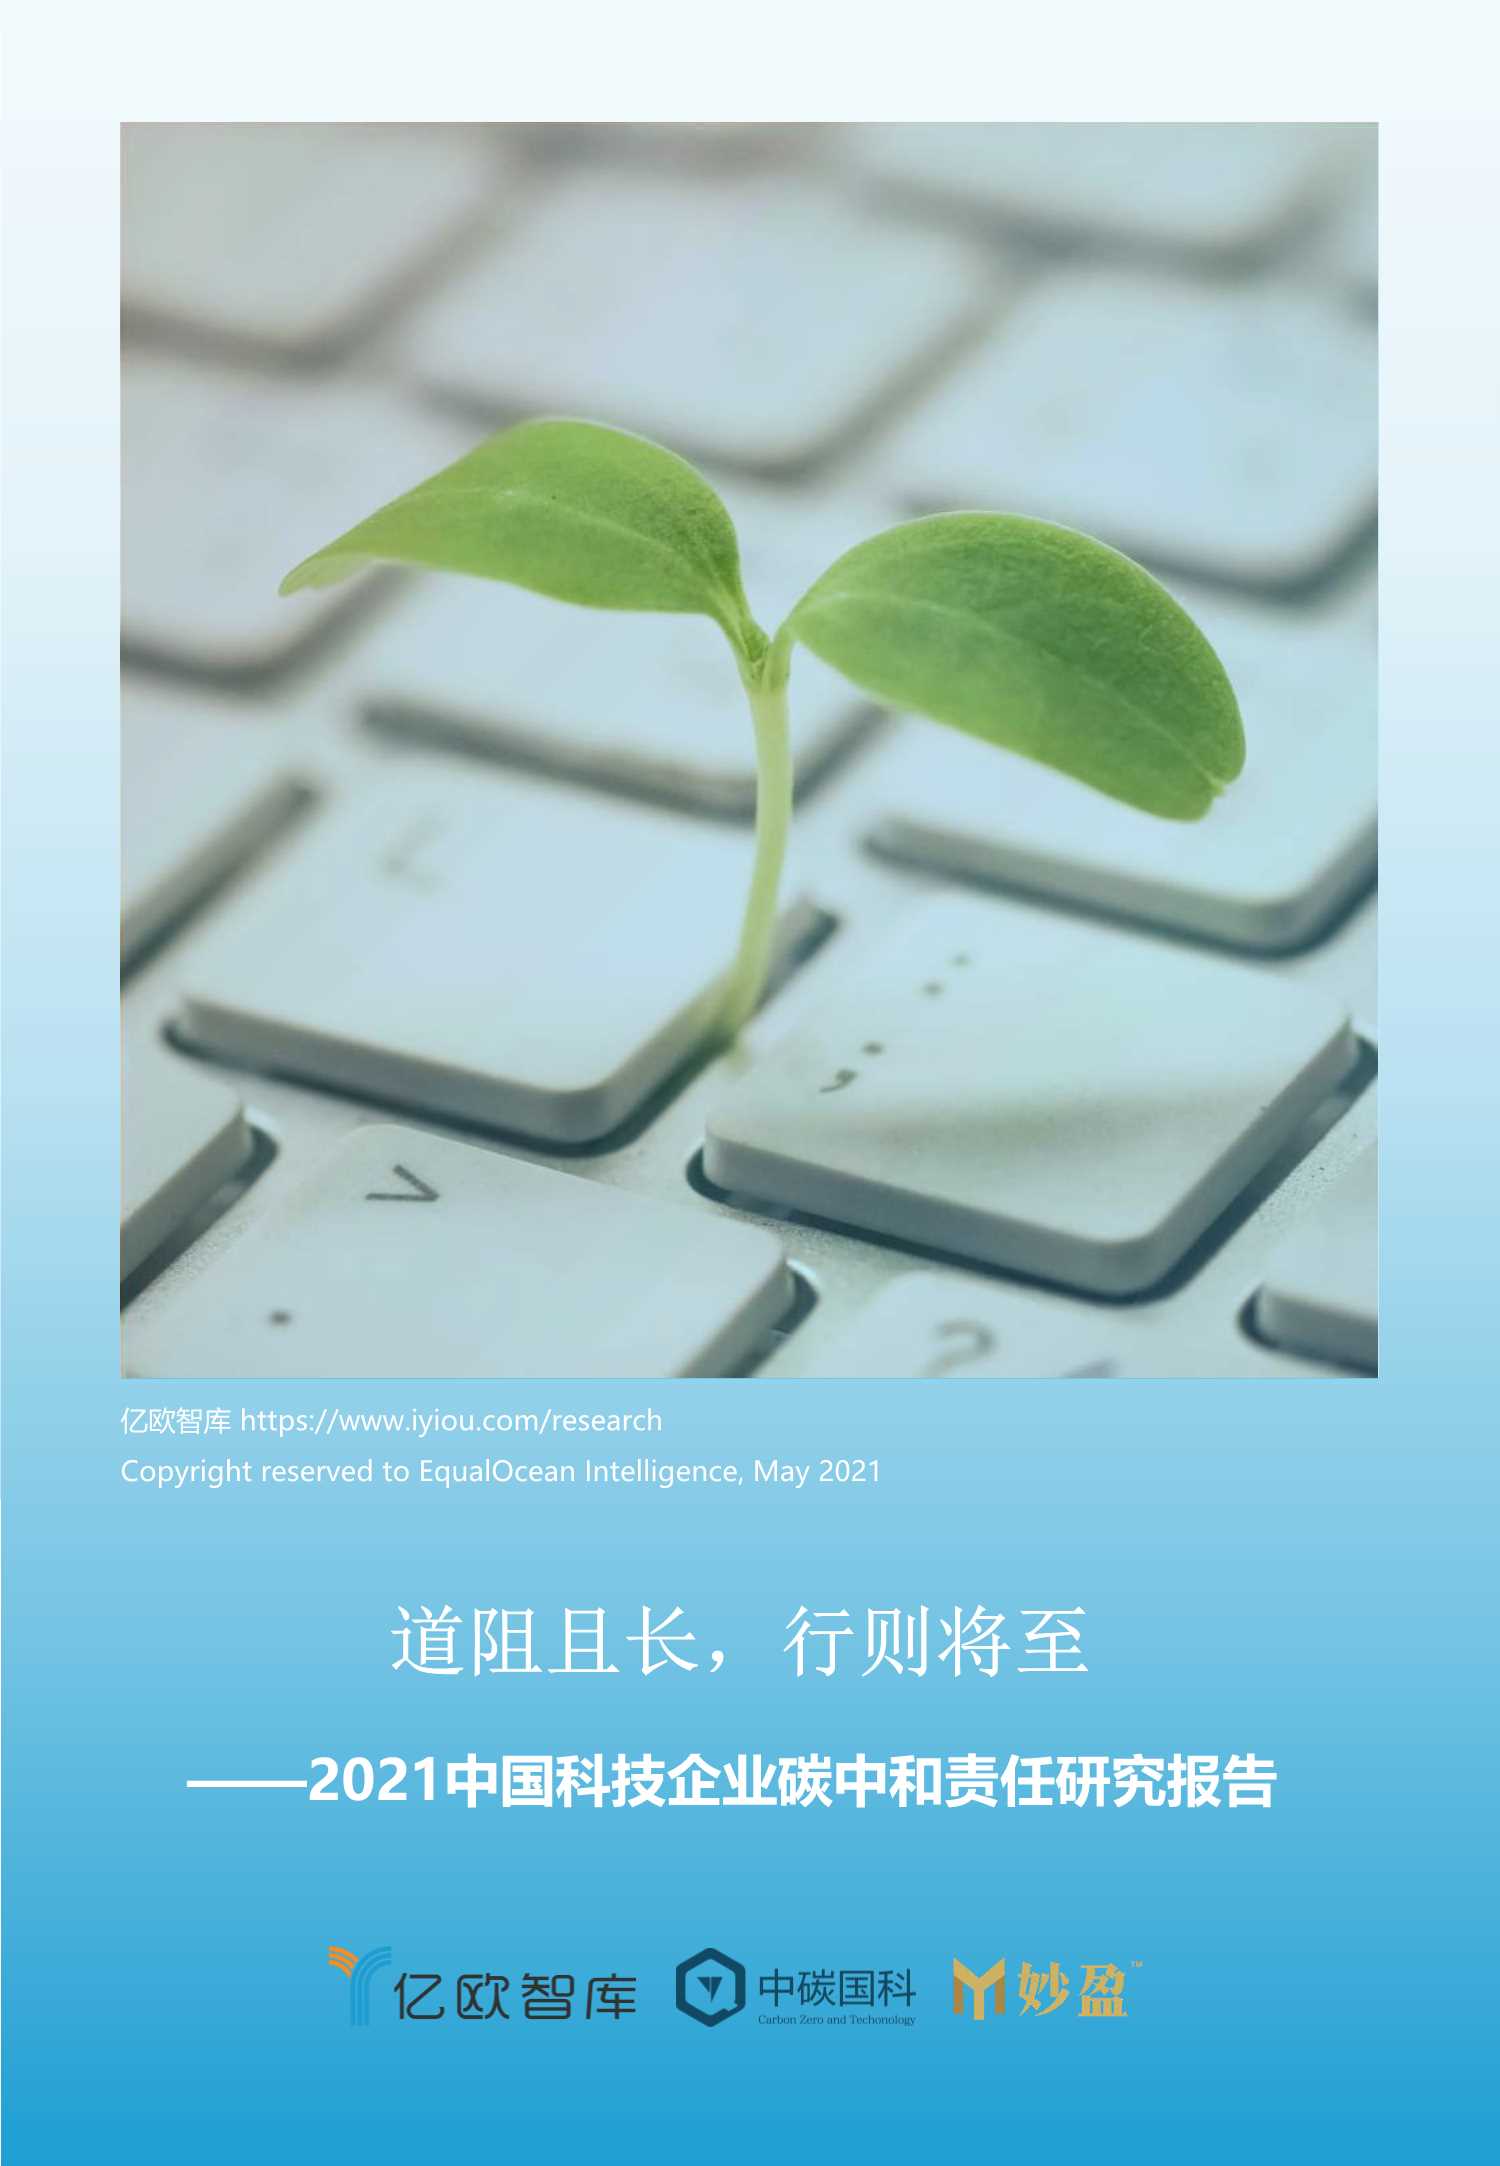 亿欧-中国科技企业碳中和责任研究报告-2021.05-42页